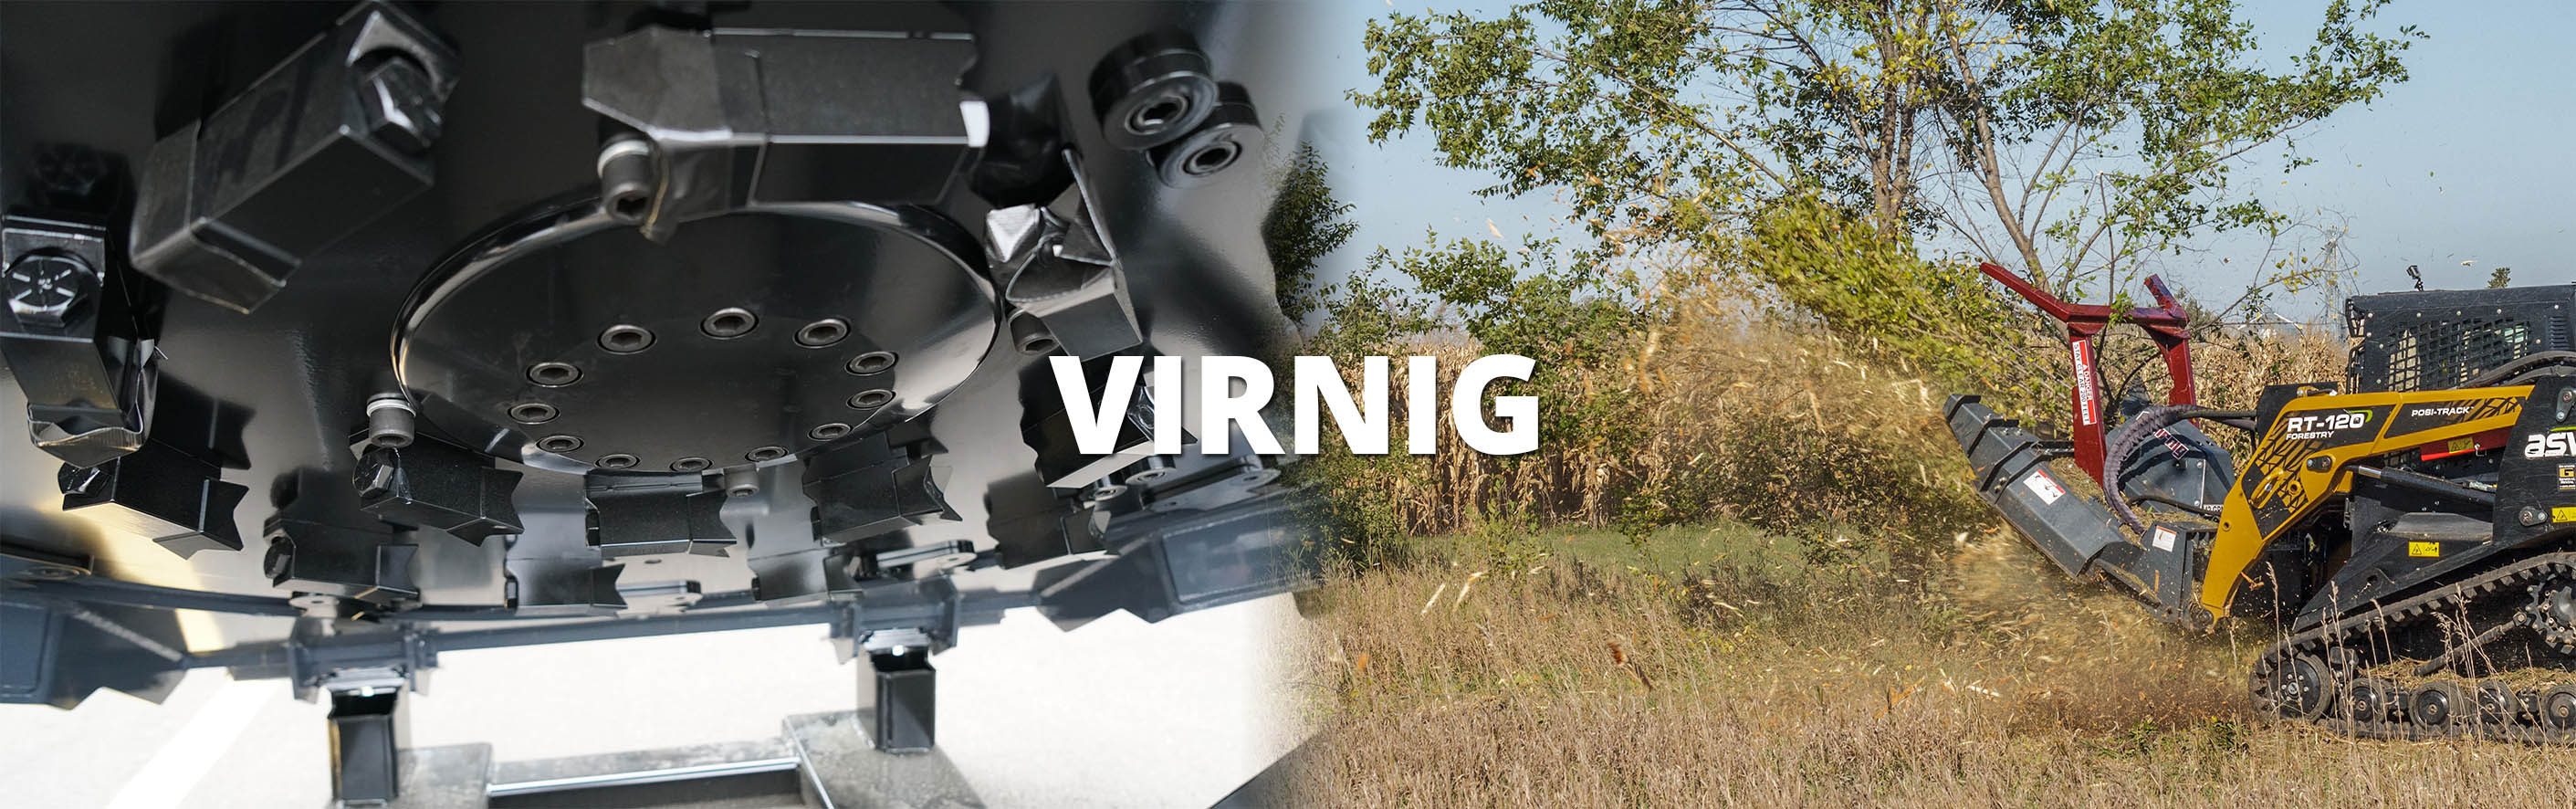 virnig-attachments-banner.jpg